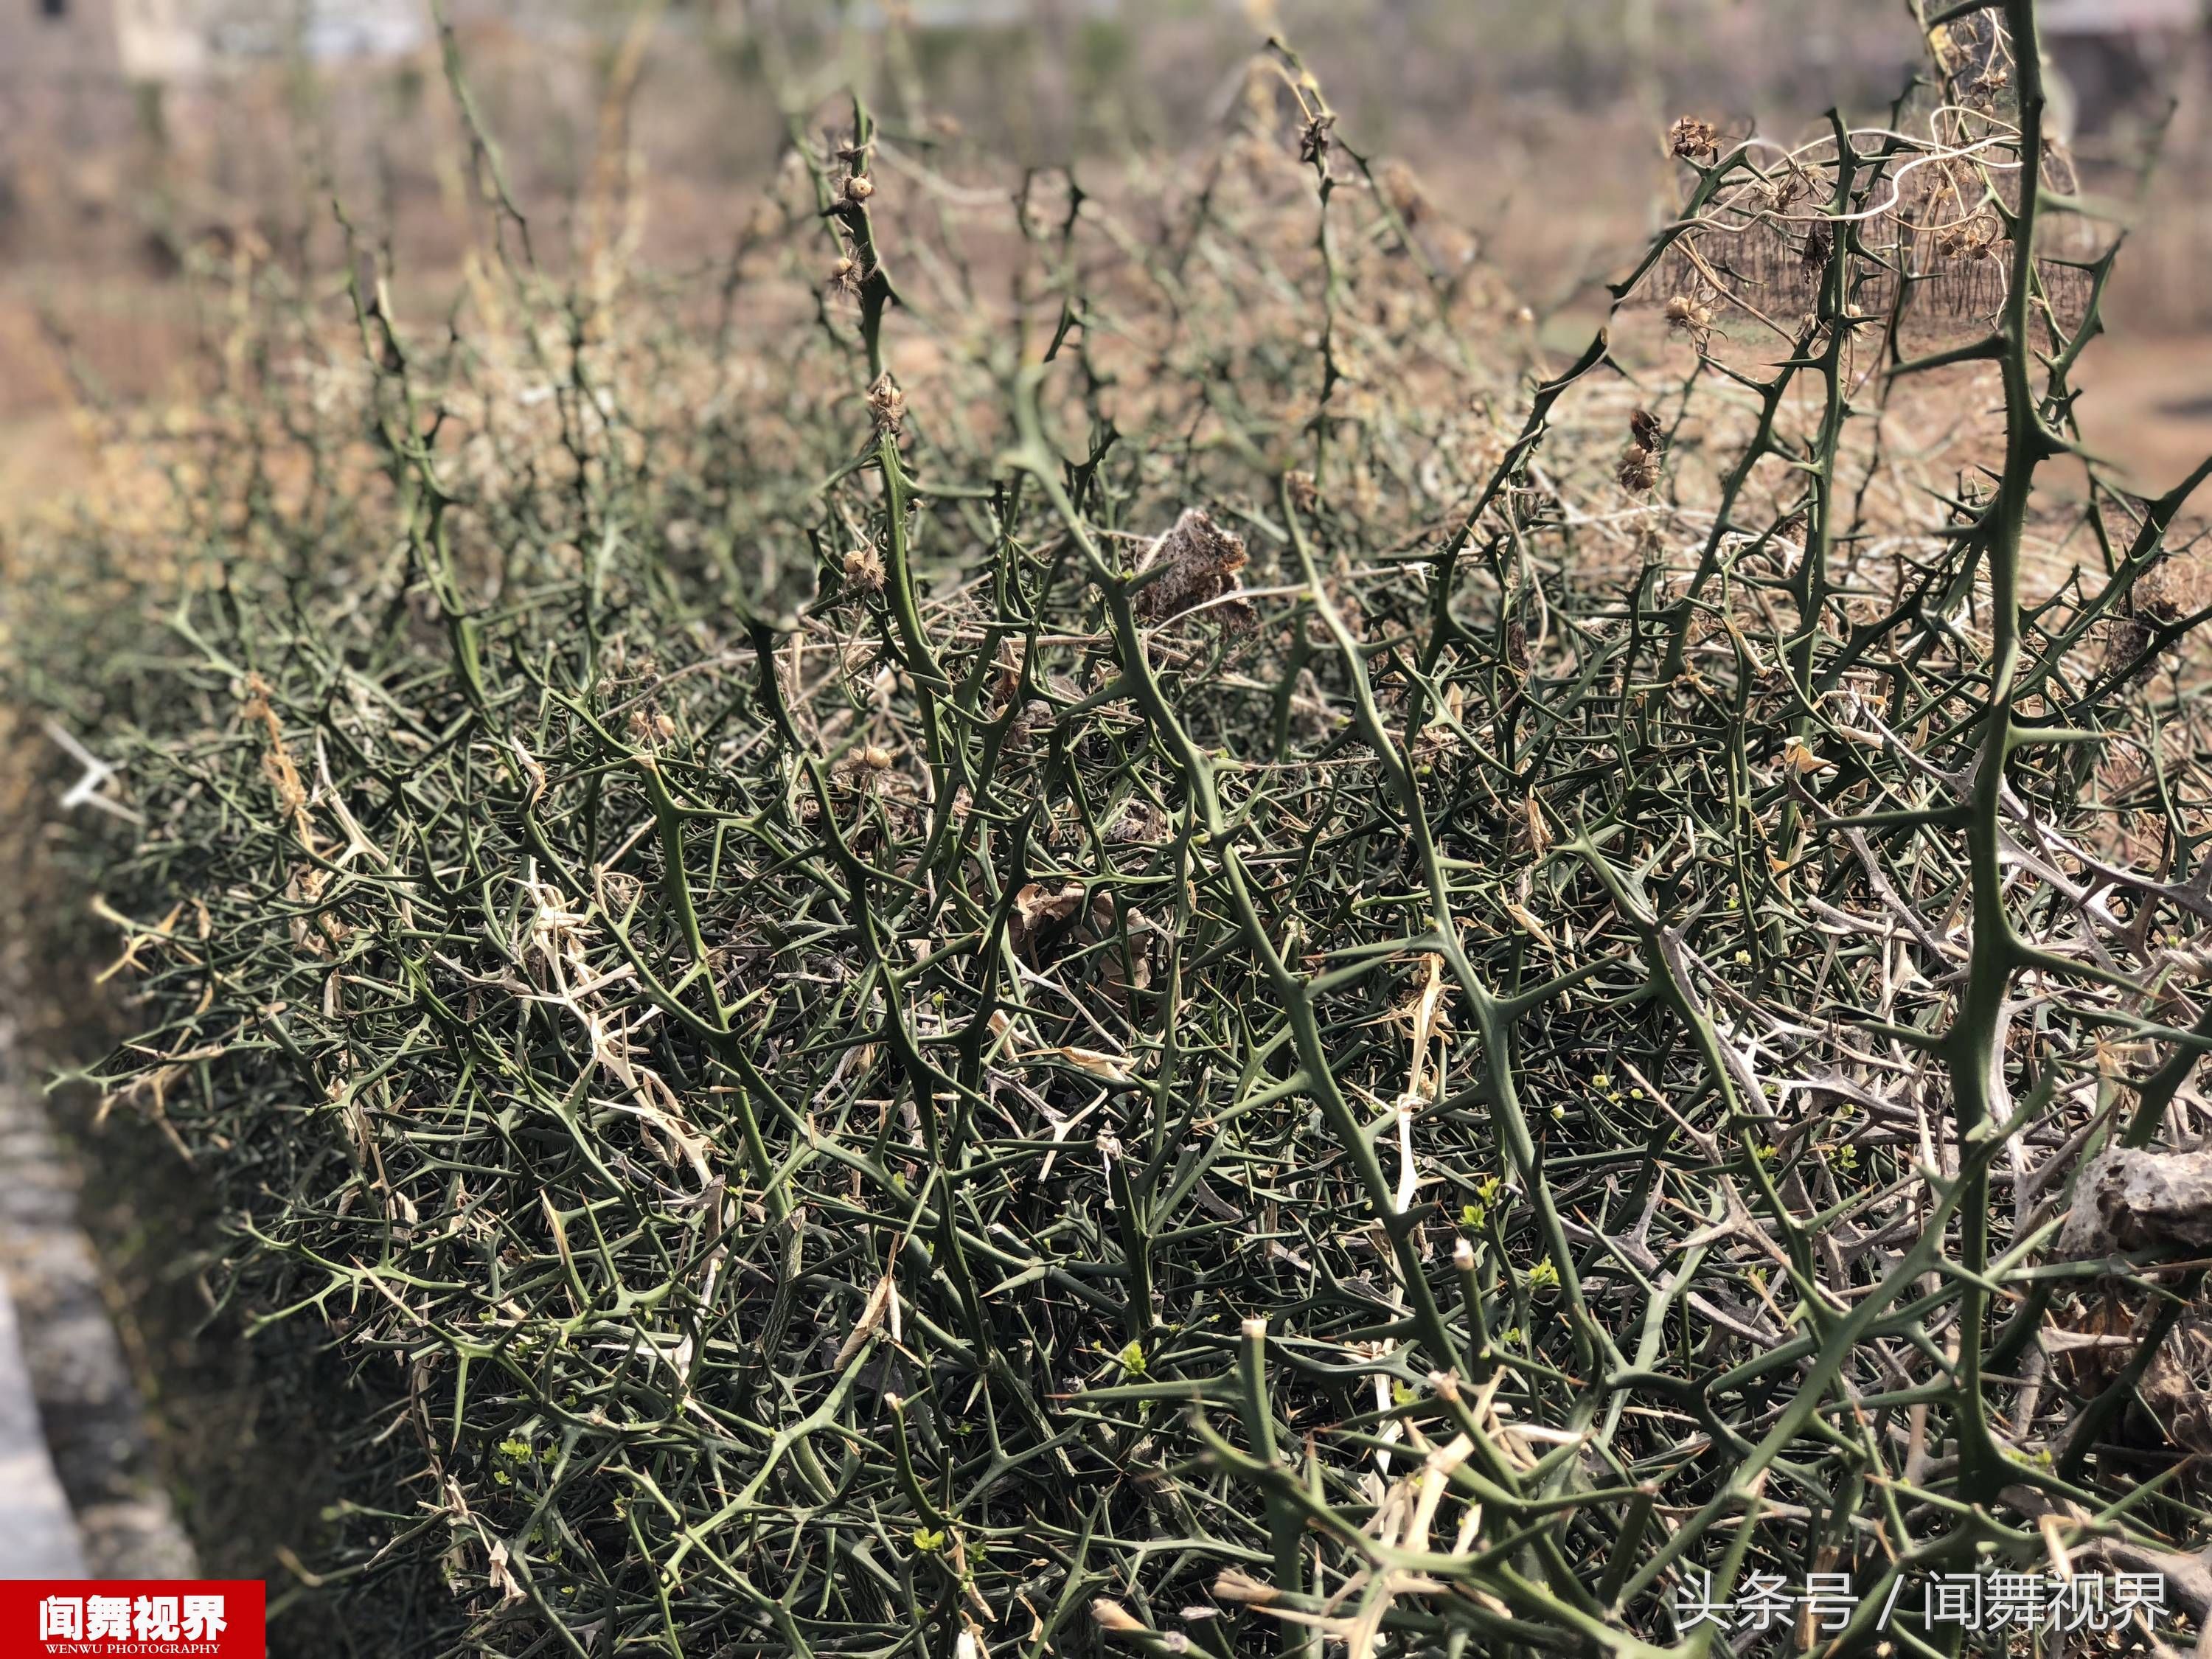 在鲁中山区的乡间田地边,摄影师遇到了一种特殊的植物,全身长满了刺